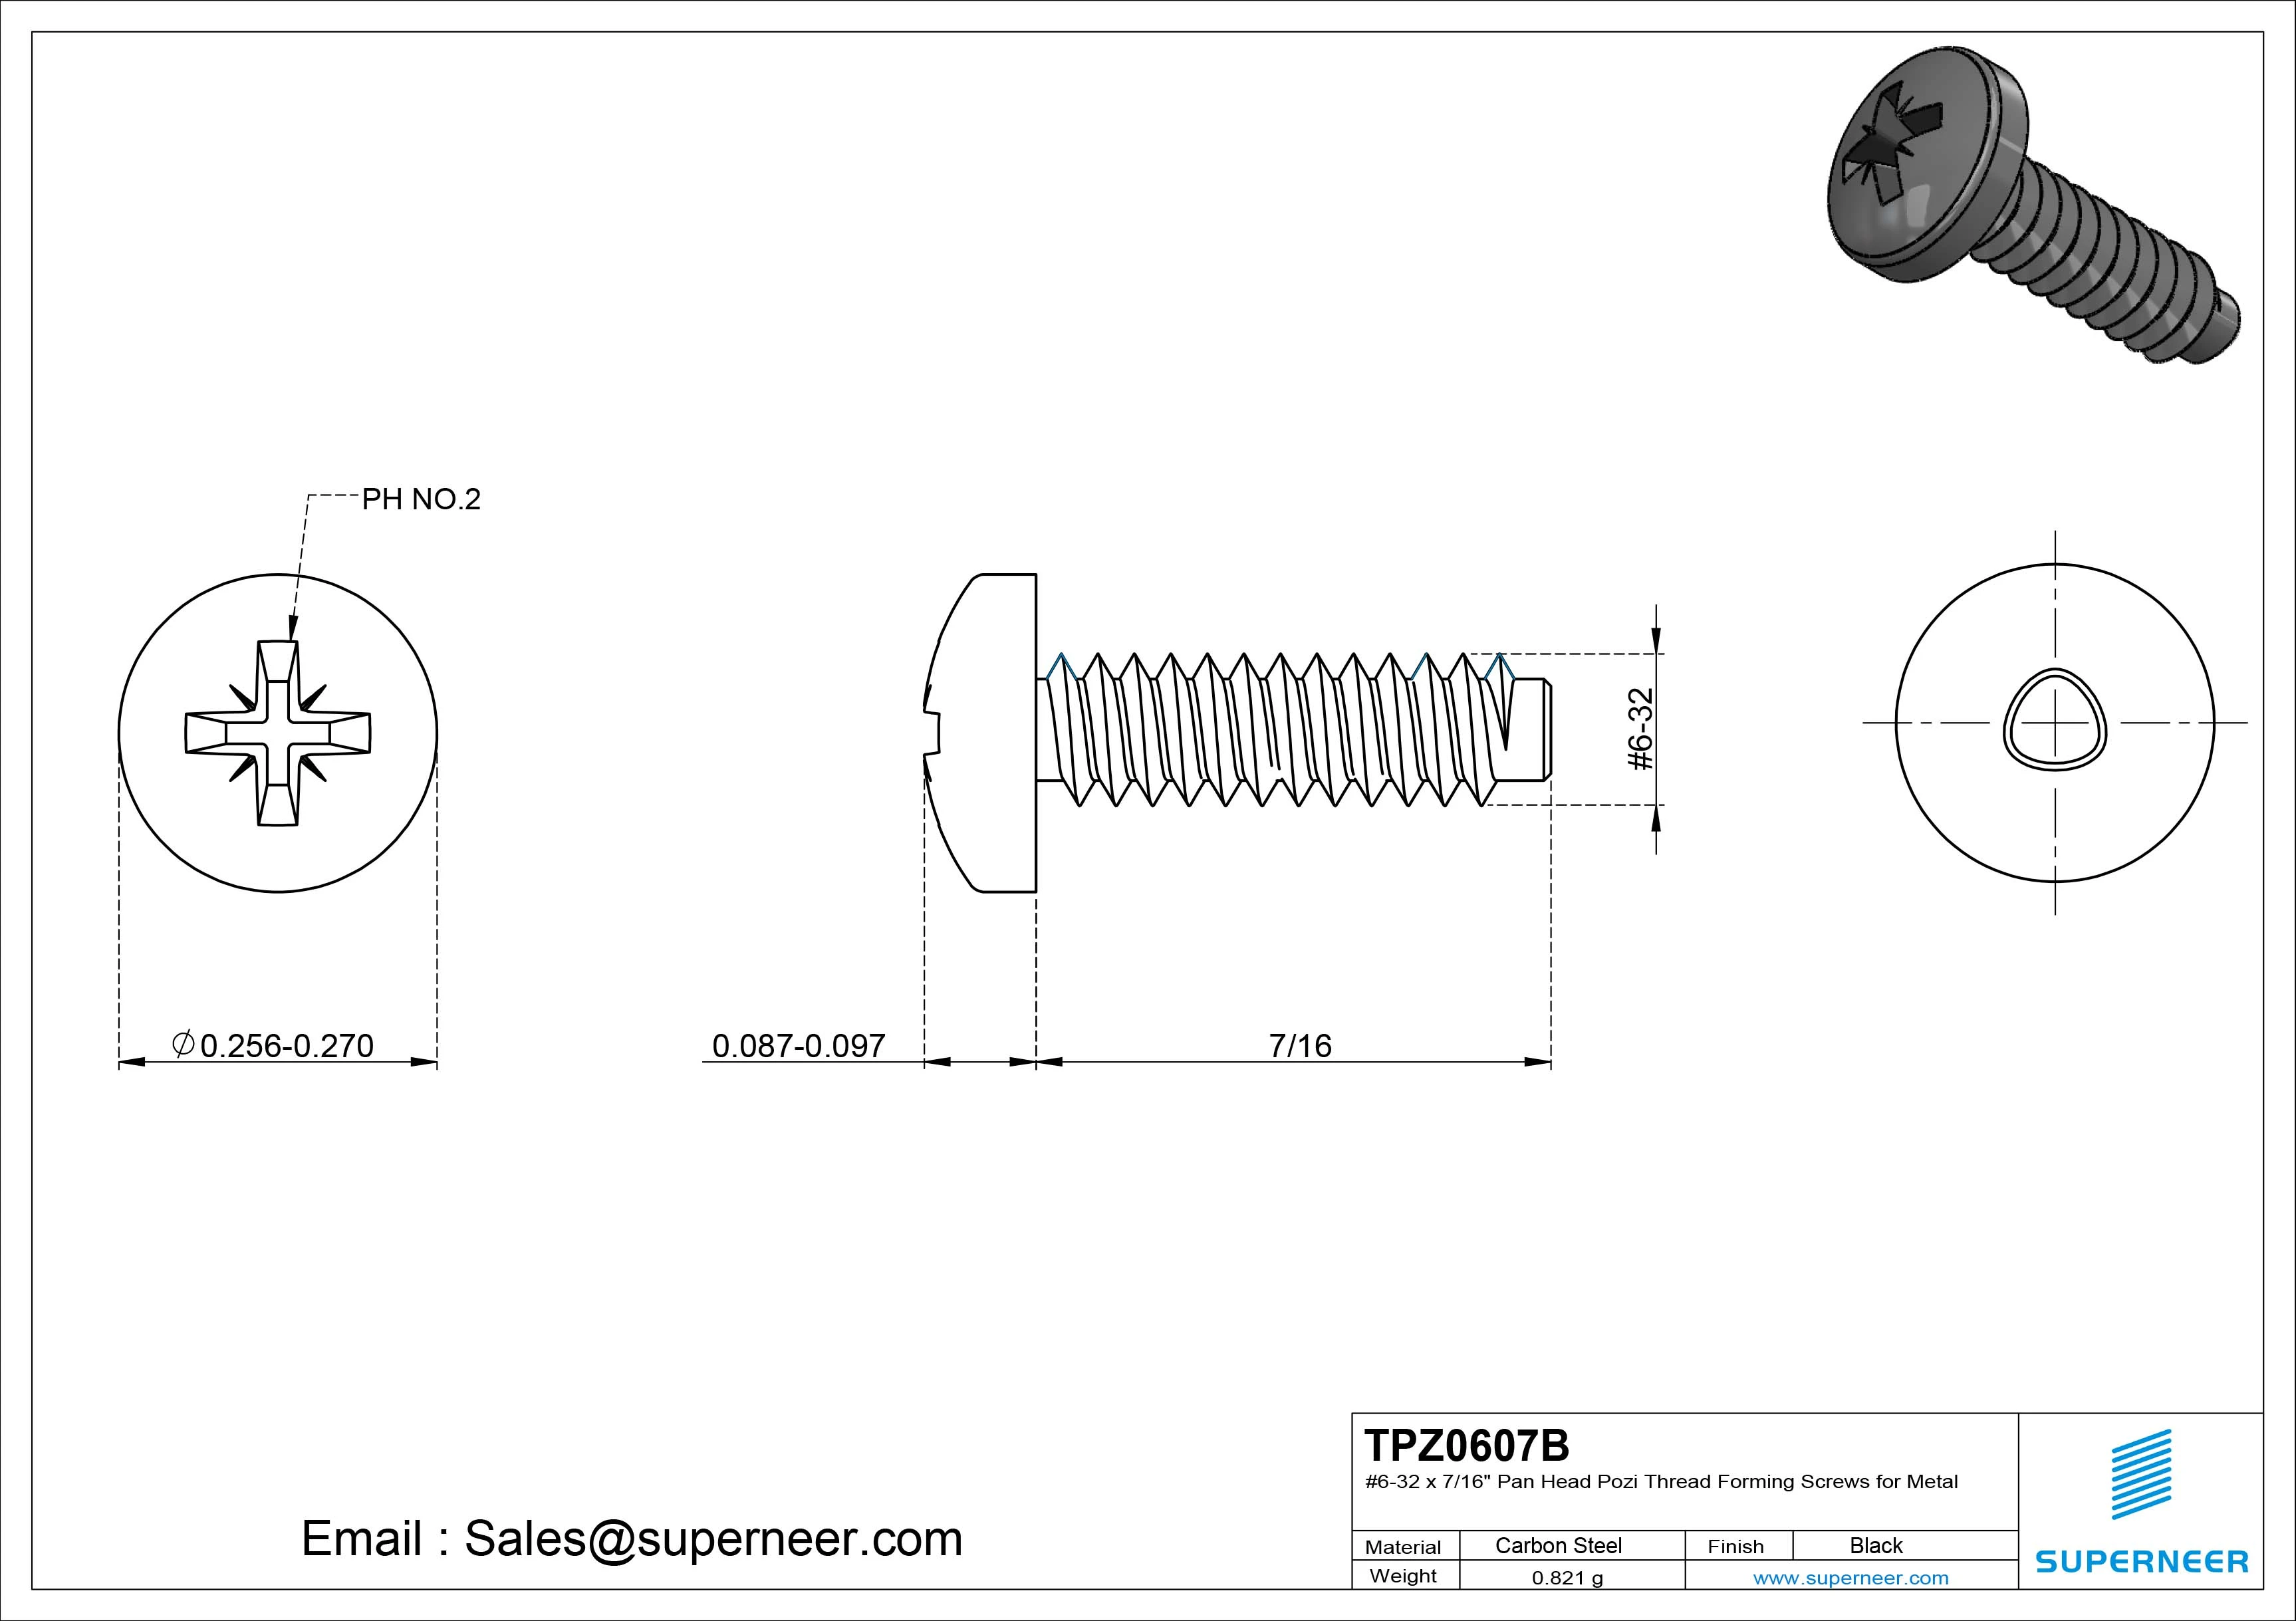 6-32 × 7/16 Pan Head Pozi Thread Forming  Screws for Metal  Steel Black